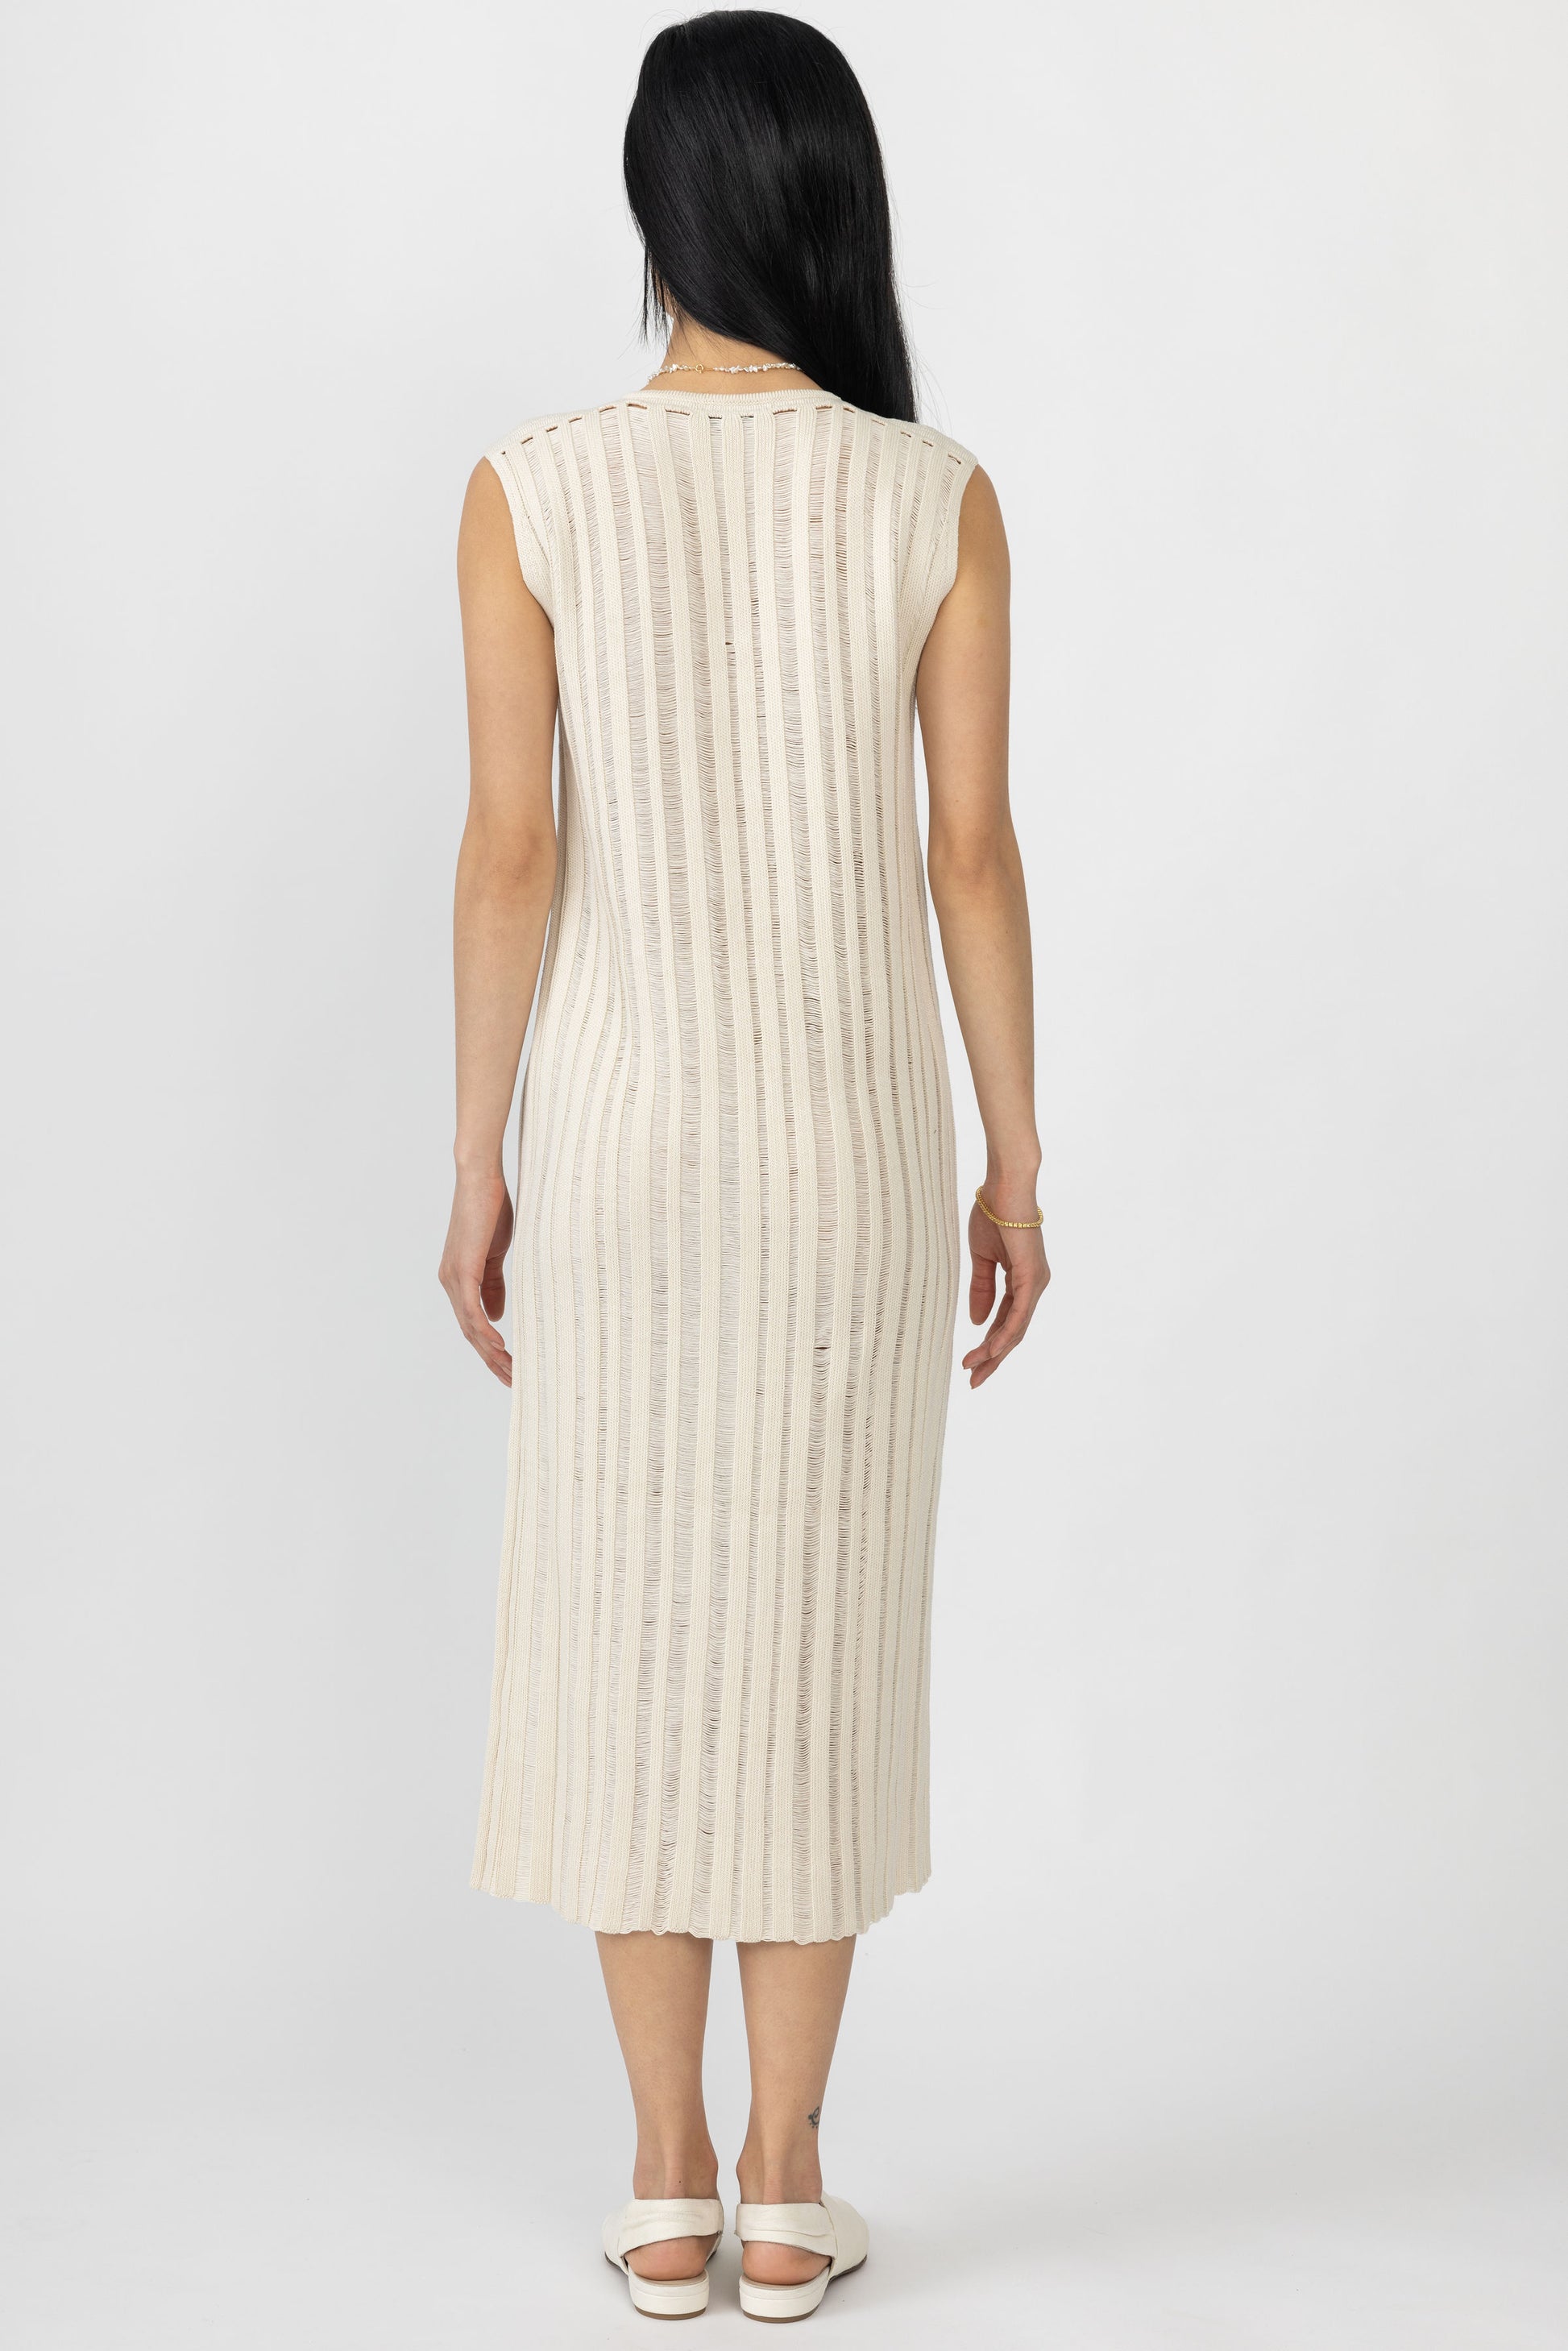 GENTRYPORTOFINO Cotton Knit Midi Dress in Ecru